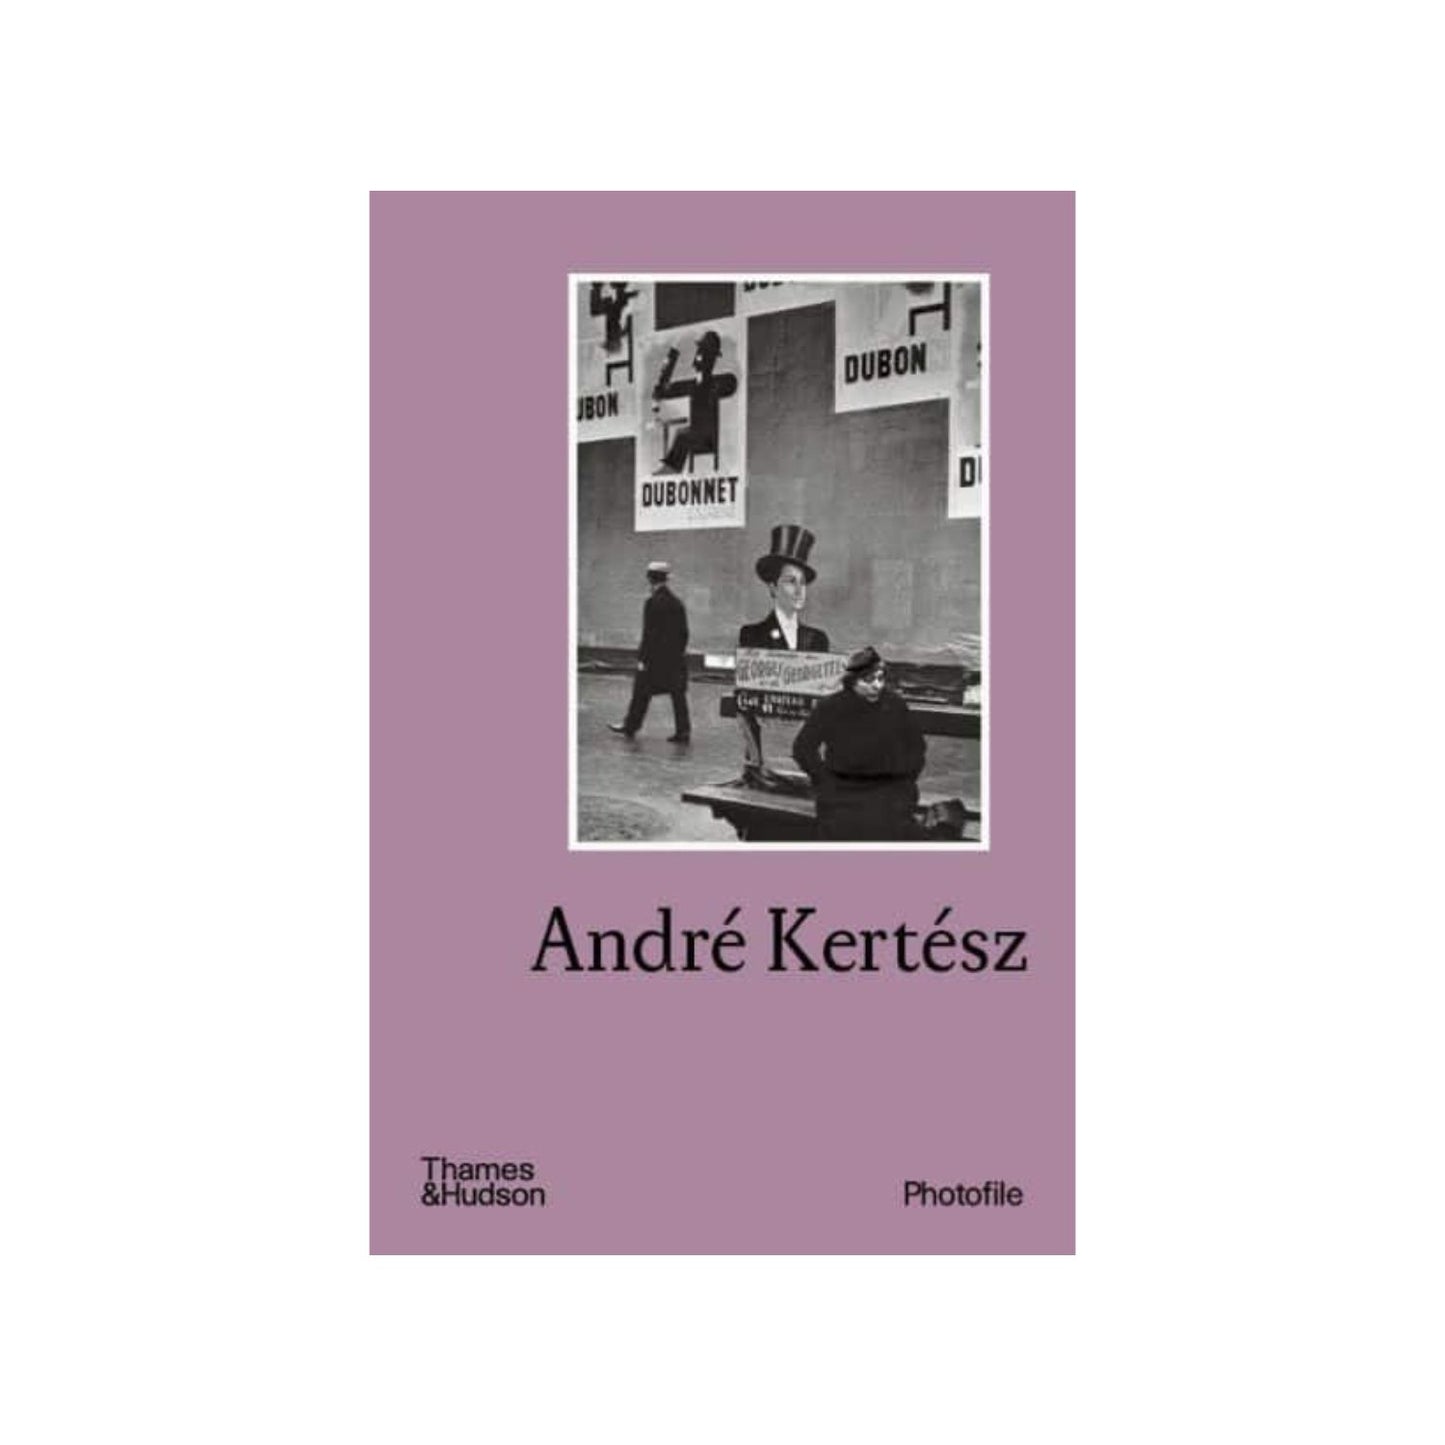 Andre Kertesz Photo Museum Ireland